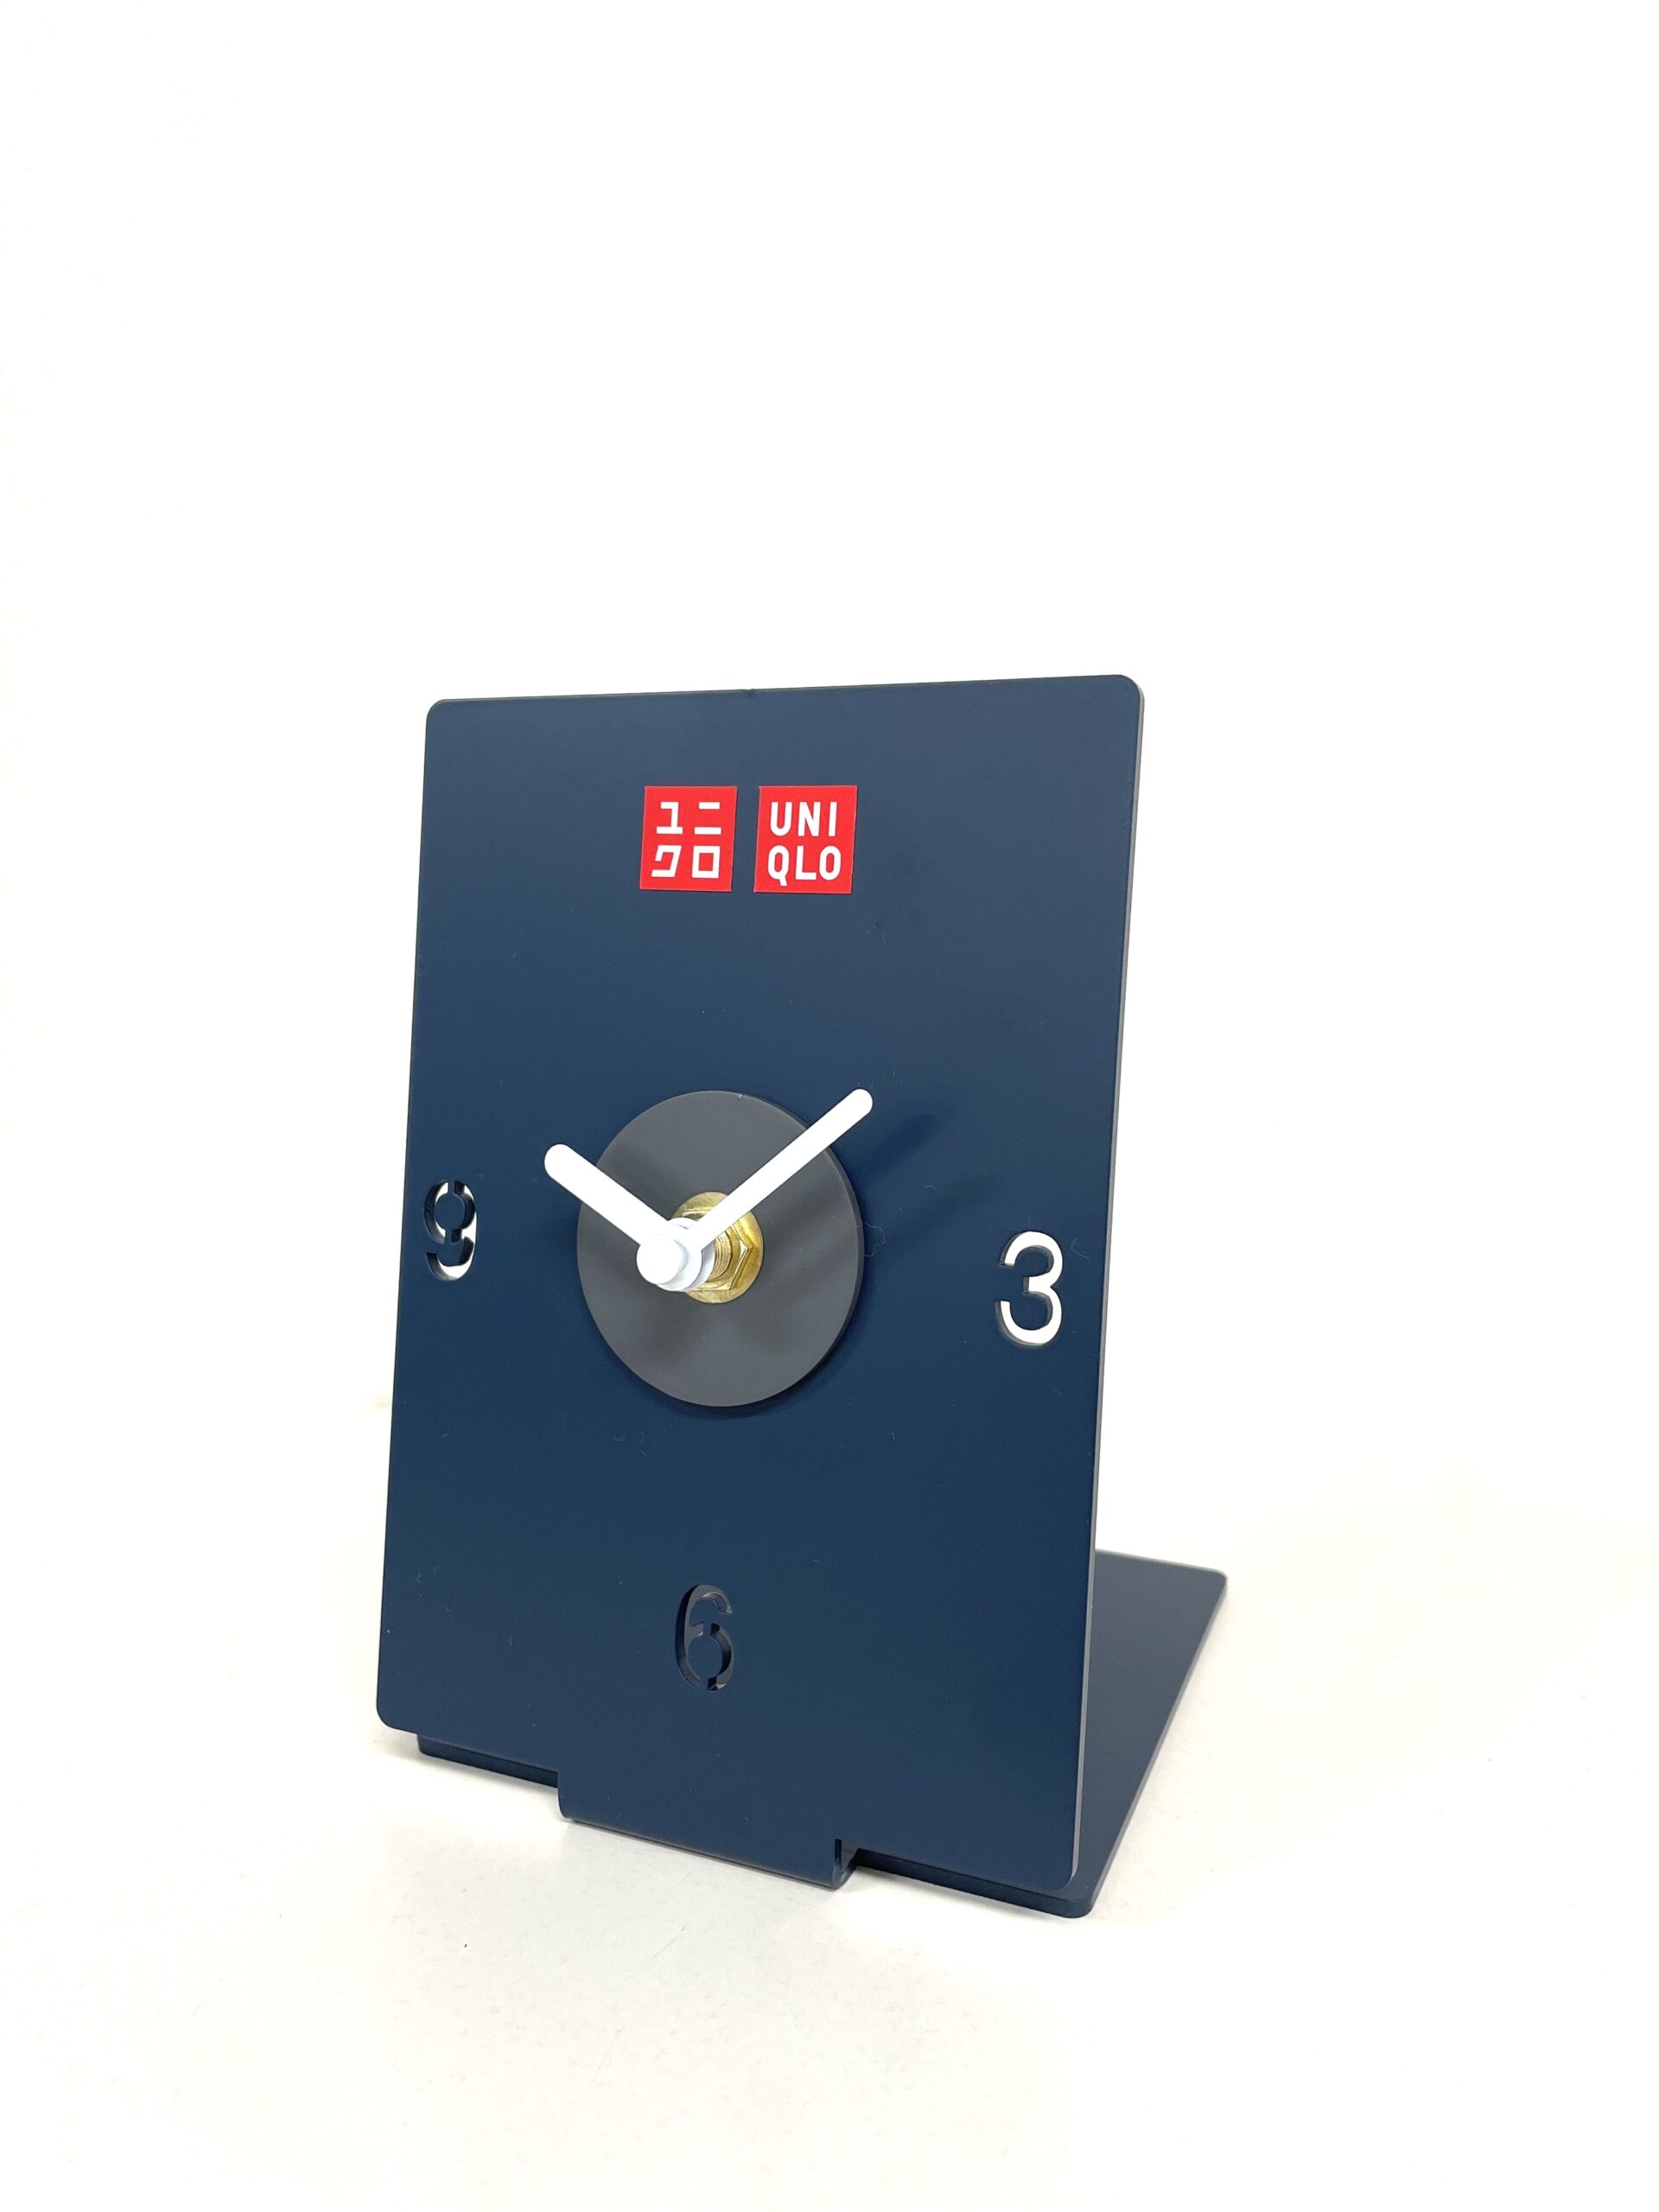 ユニクロ様の新規開店記念品の時計に横浜工場製作の文字盤が採用されました。